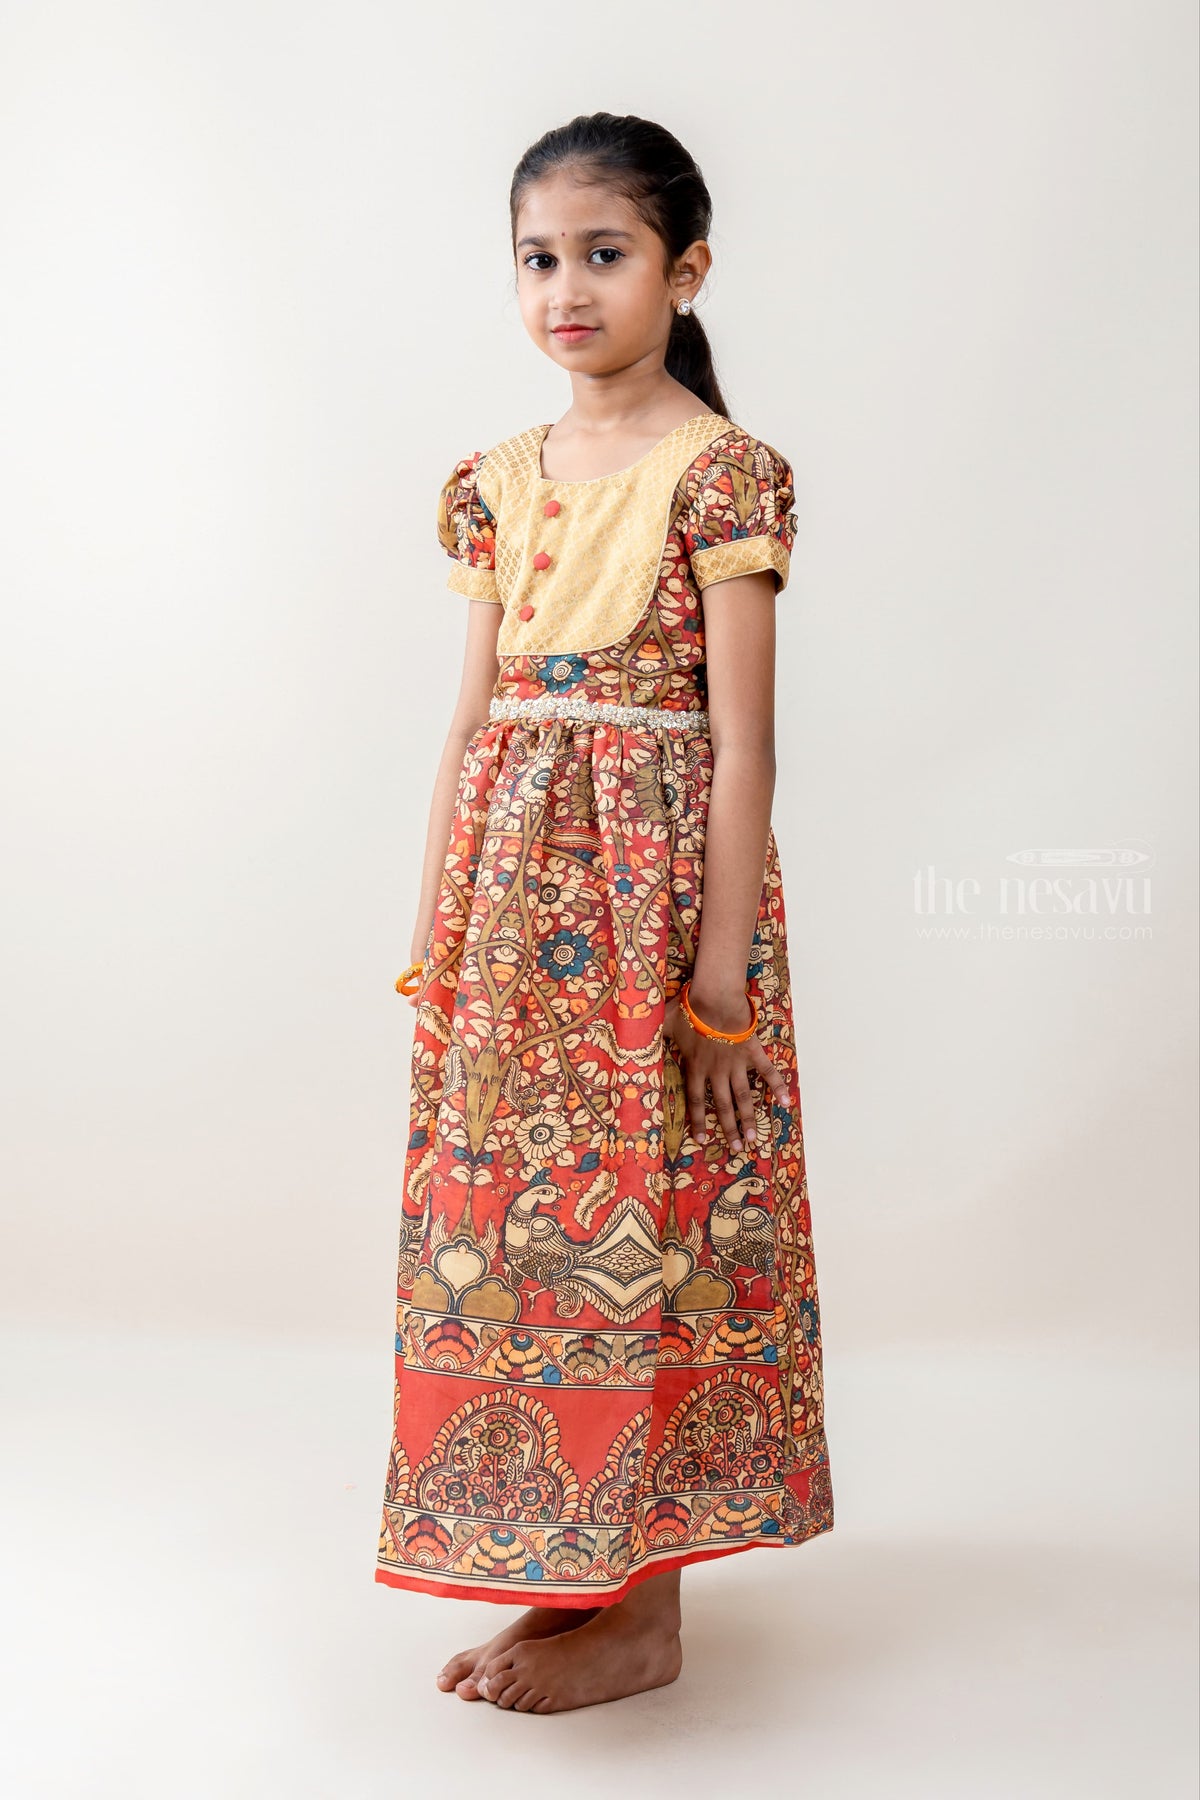 Indian Girls Children Kids Pattu Pavadai Lahenga Dress Sattai Kalamkari  Blouse | eBay